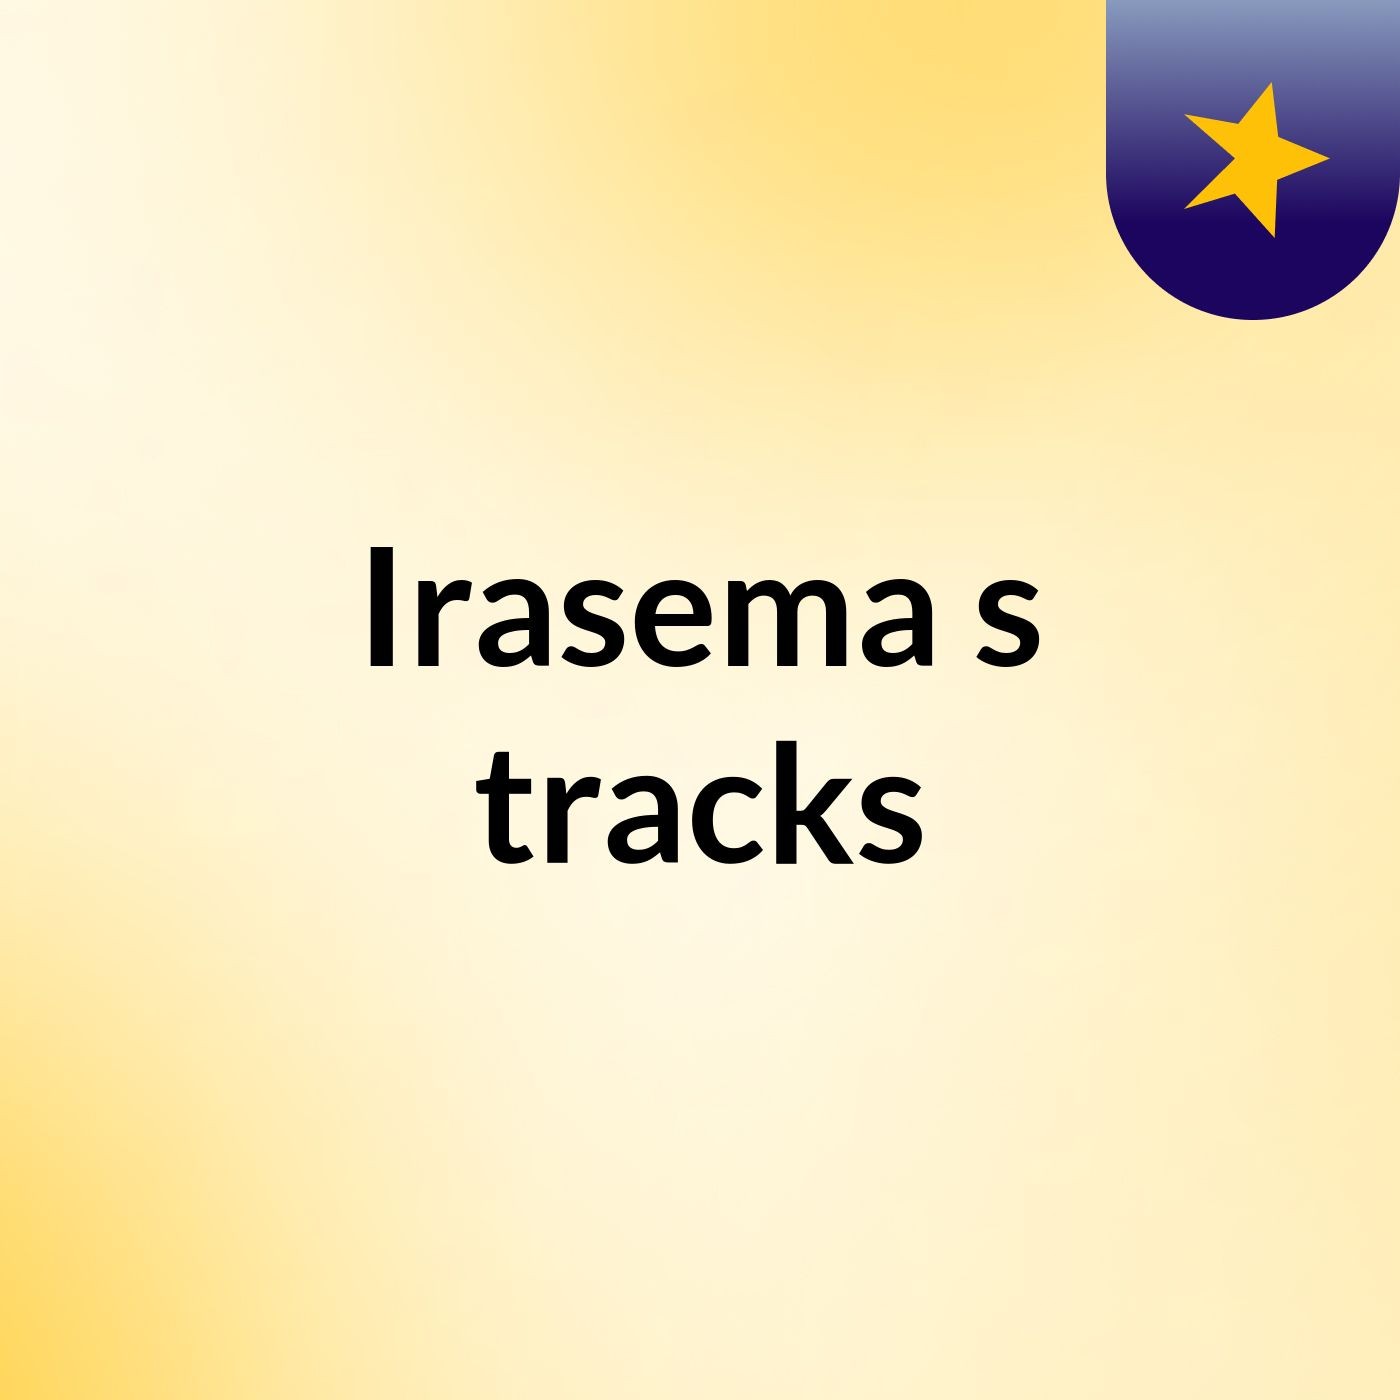 Irasema's tracks